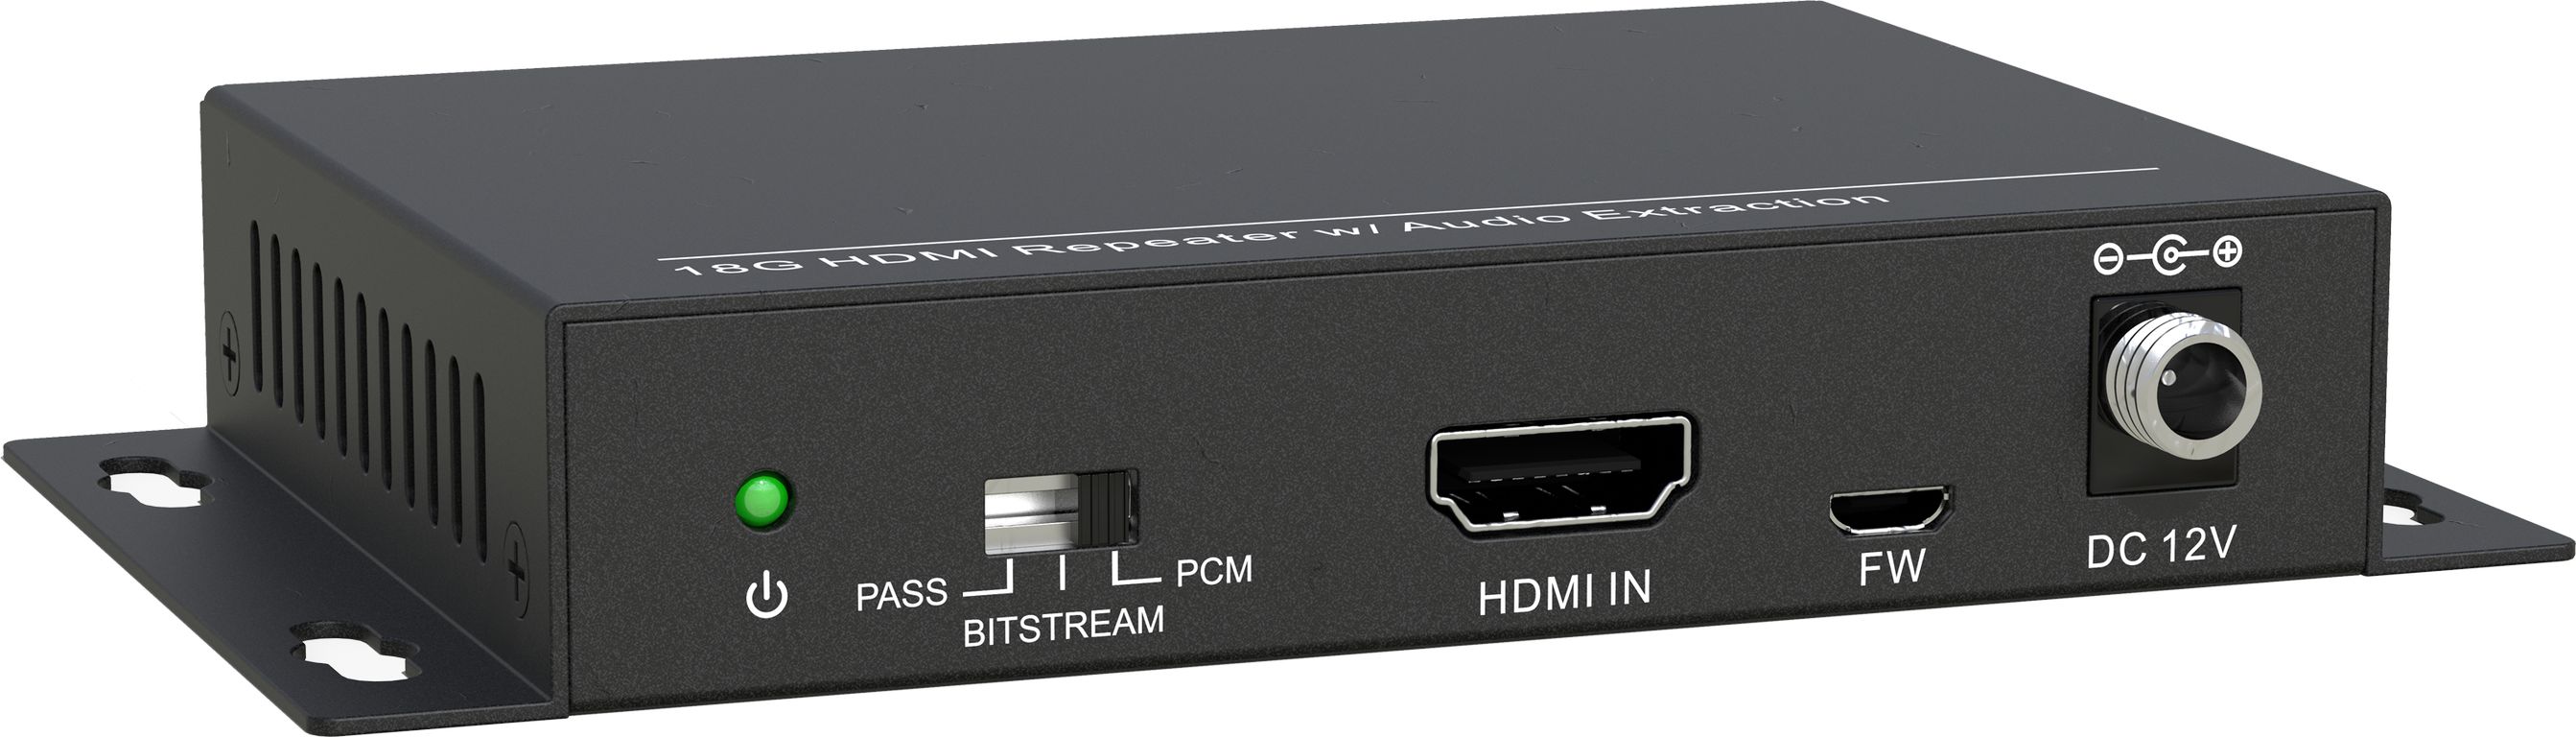 HDMI коммутаторы, разветвители, повторители Digis SS-AC1-4K2